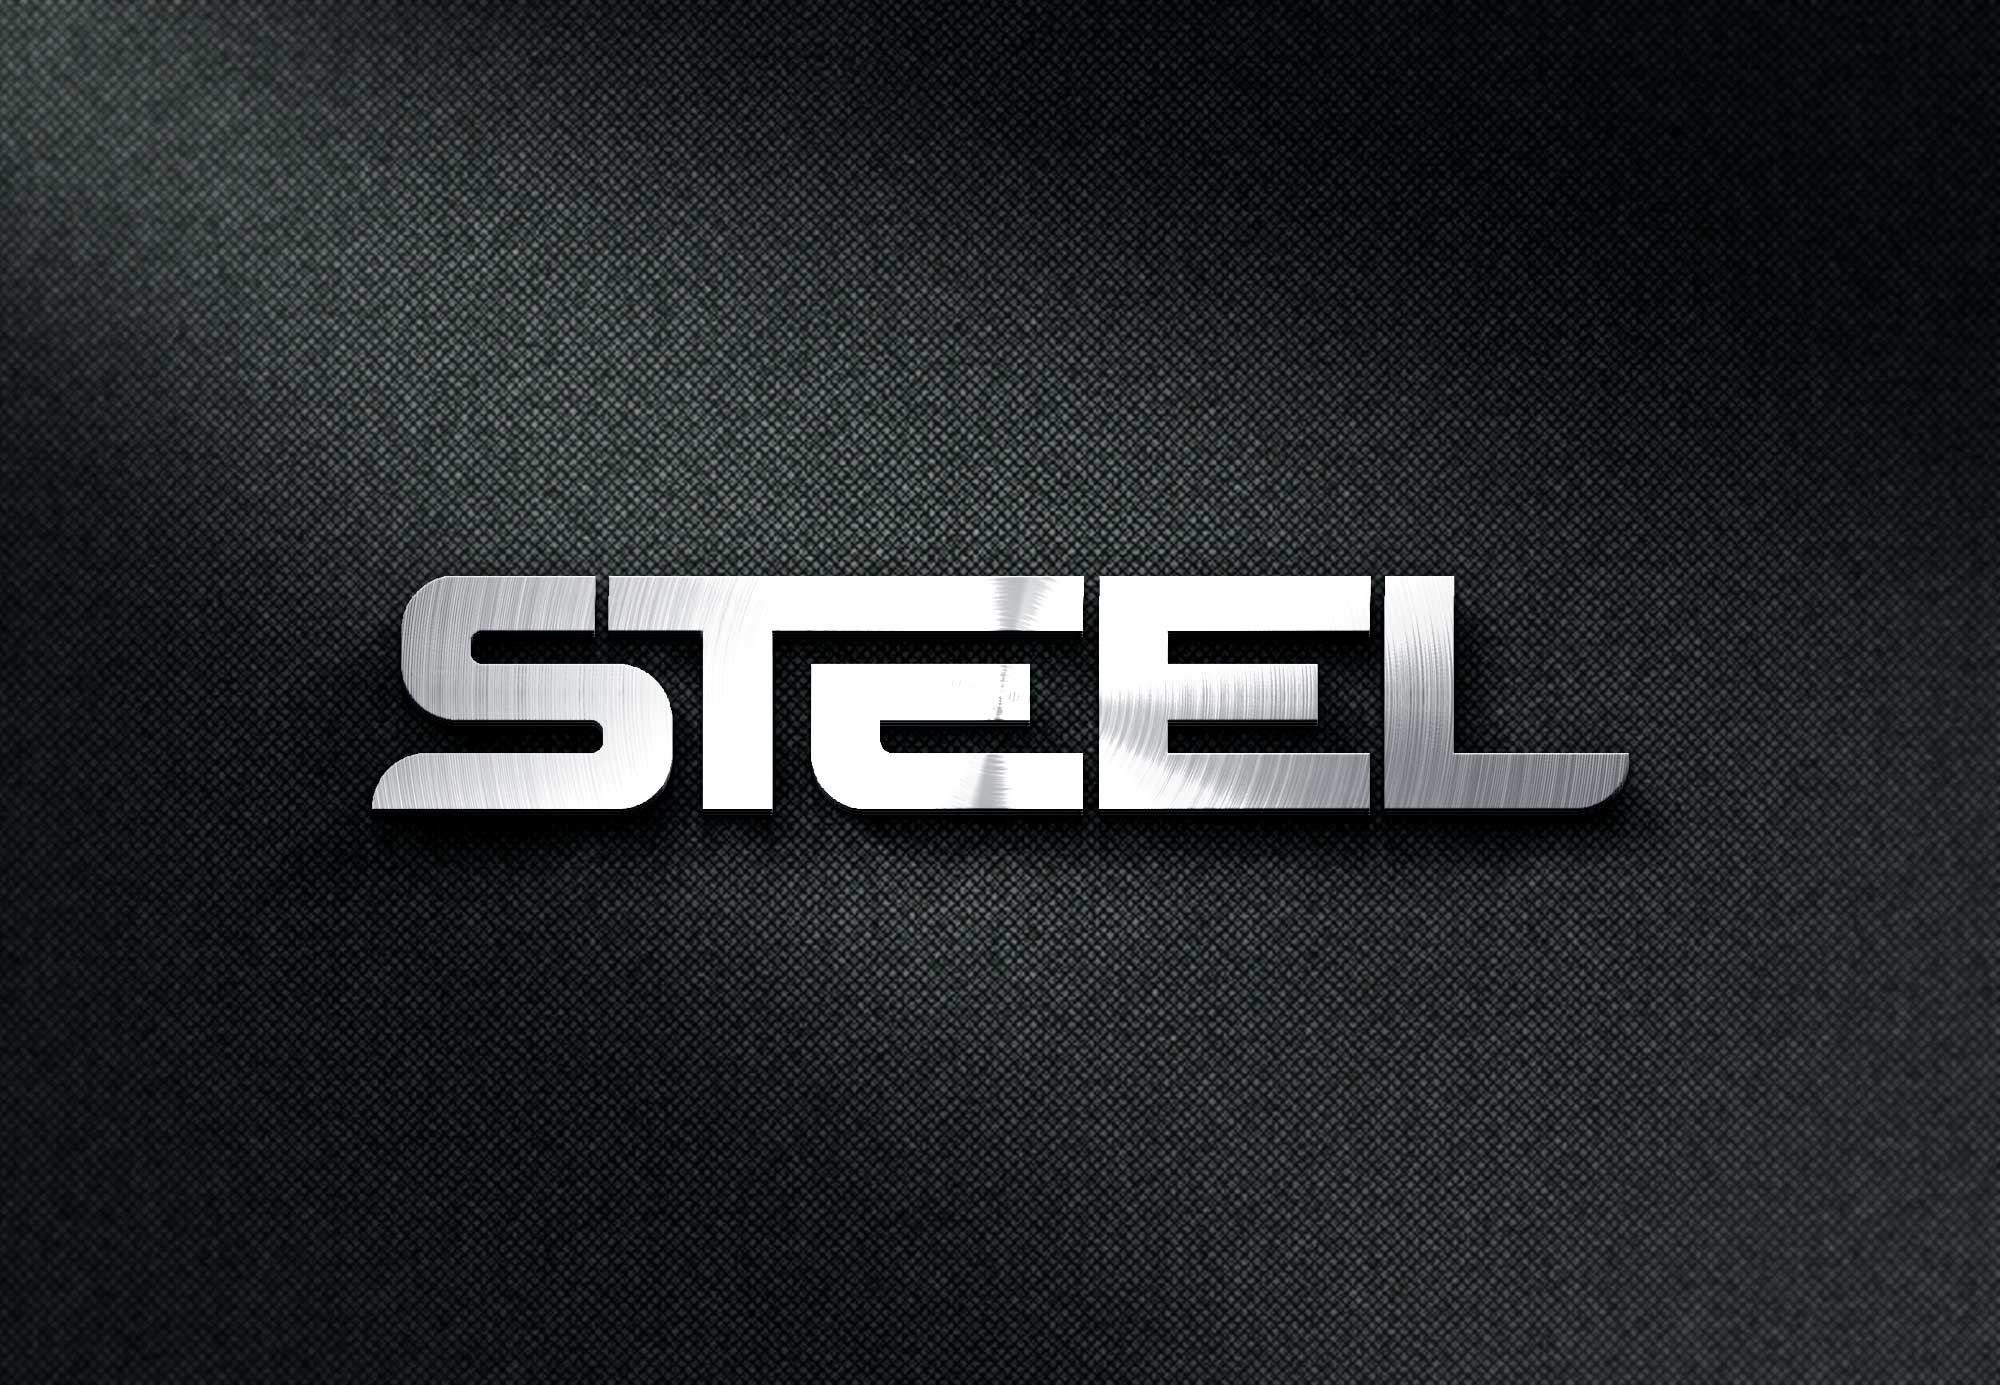 Steel Logo - Free Download Premium Steel Logo Mockup in PSD - Designhooks